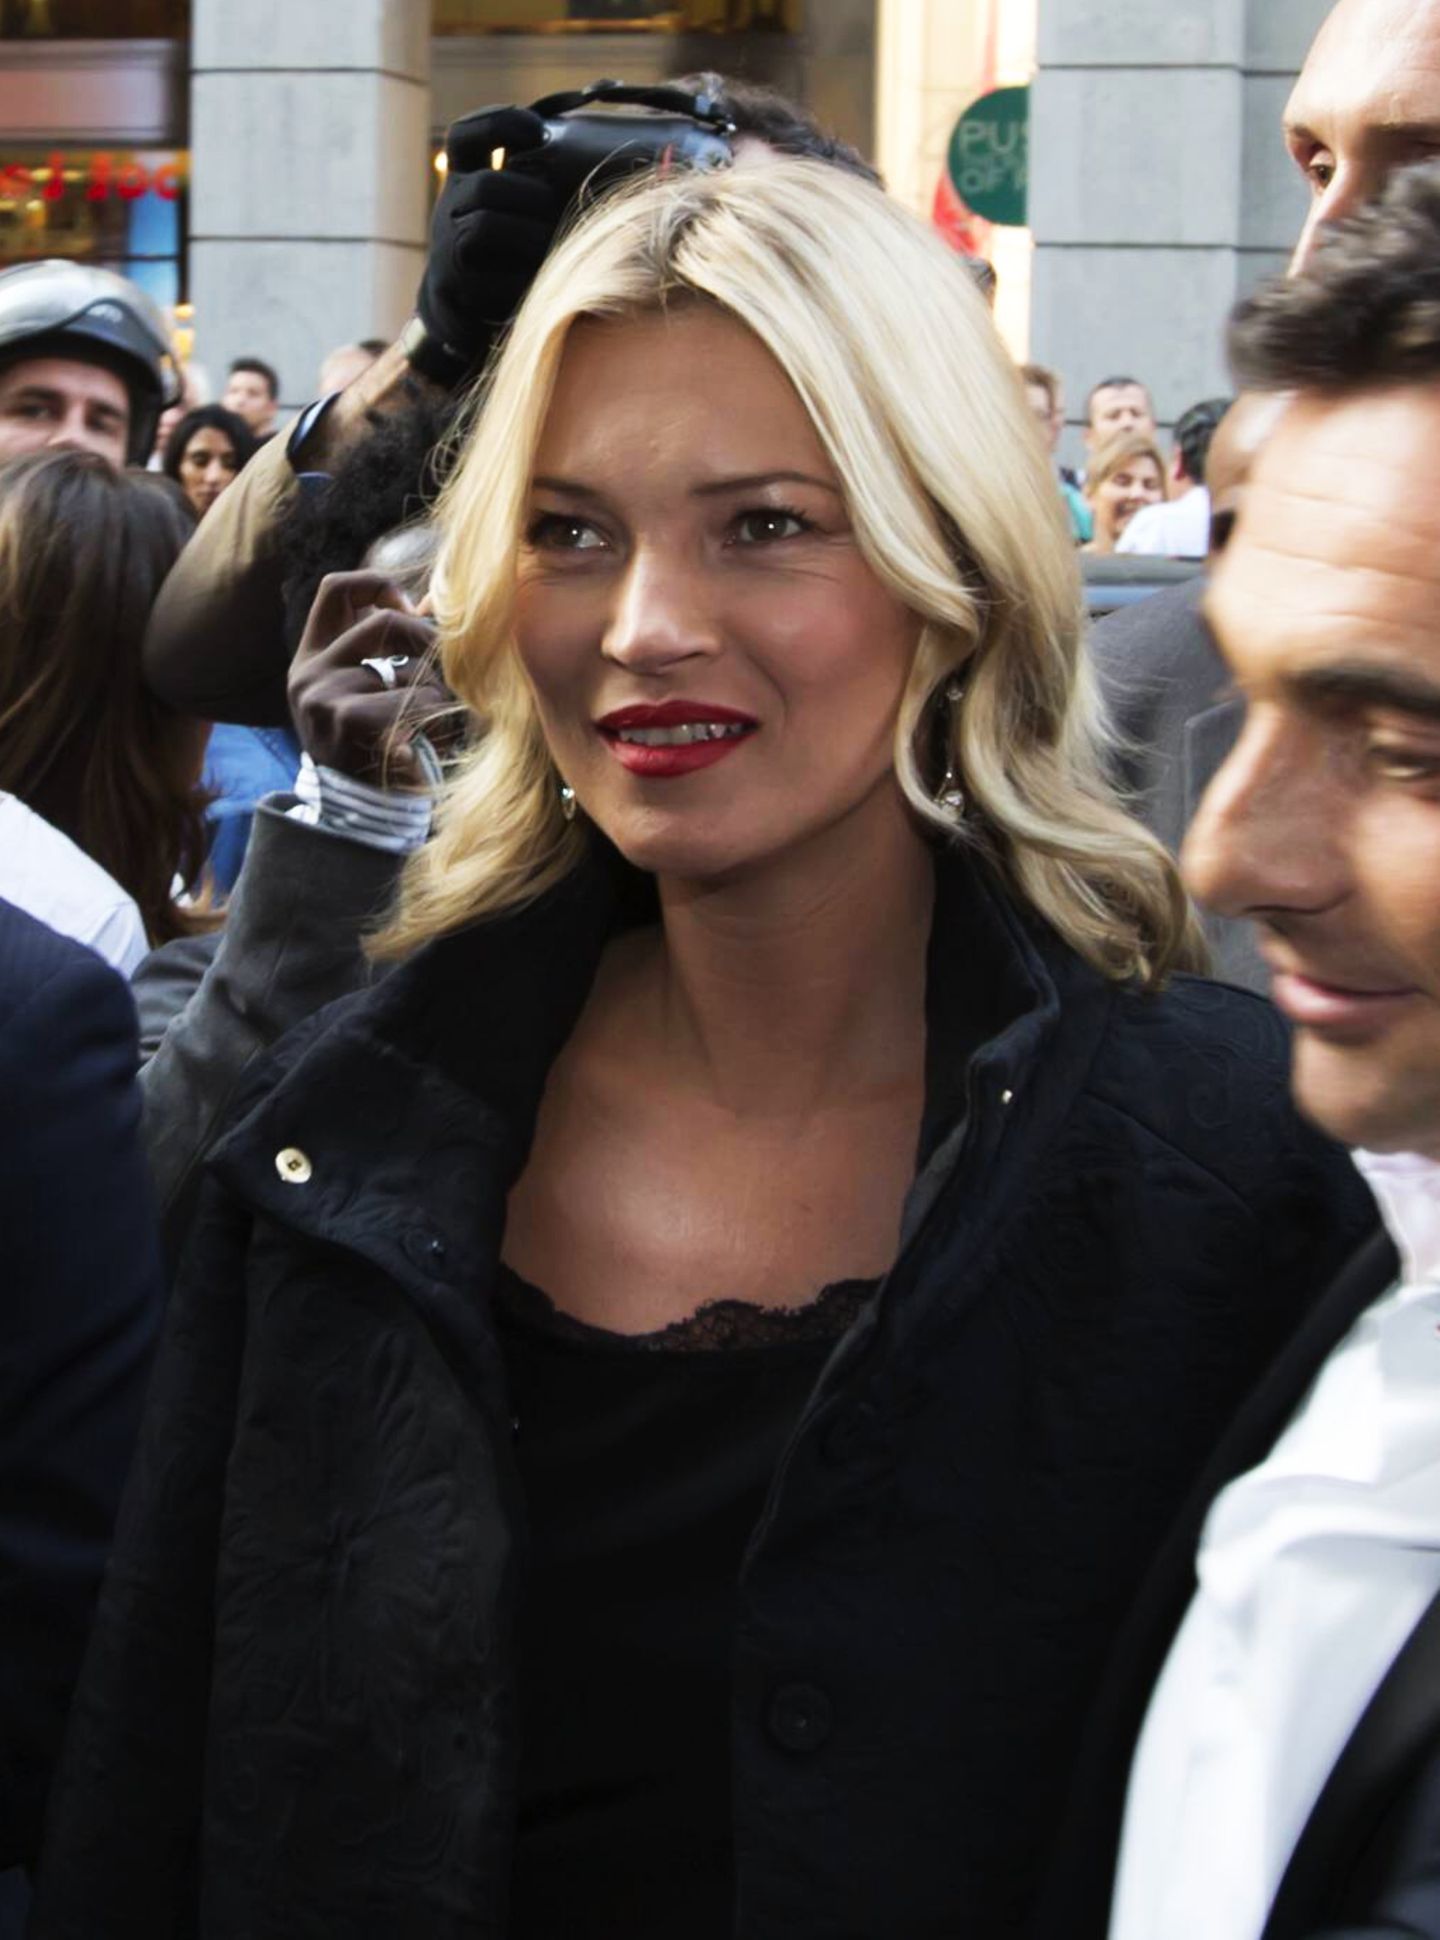 Wo auch immer Supermodel Kate Moss auftaucht, verursacht sie einen Menschenauflauf. Wie hier im September 2012 bei ihrem Besuch der Fashion Week in Mailand. 10 Jahre später zieht sie die Kameras immer noch auf sich.